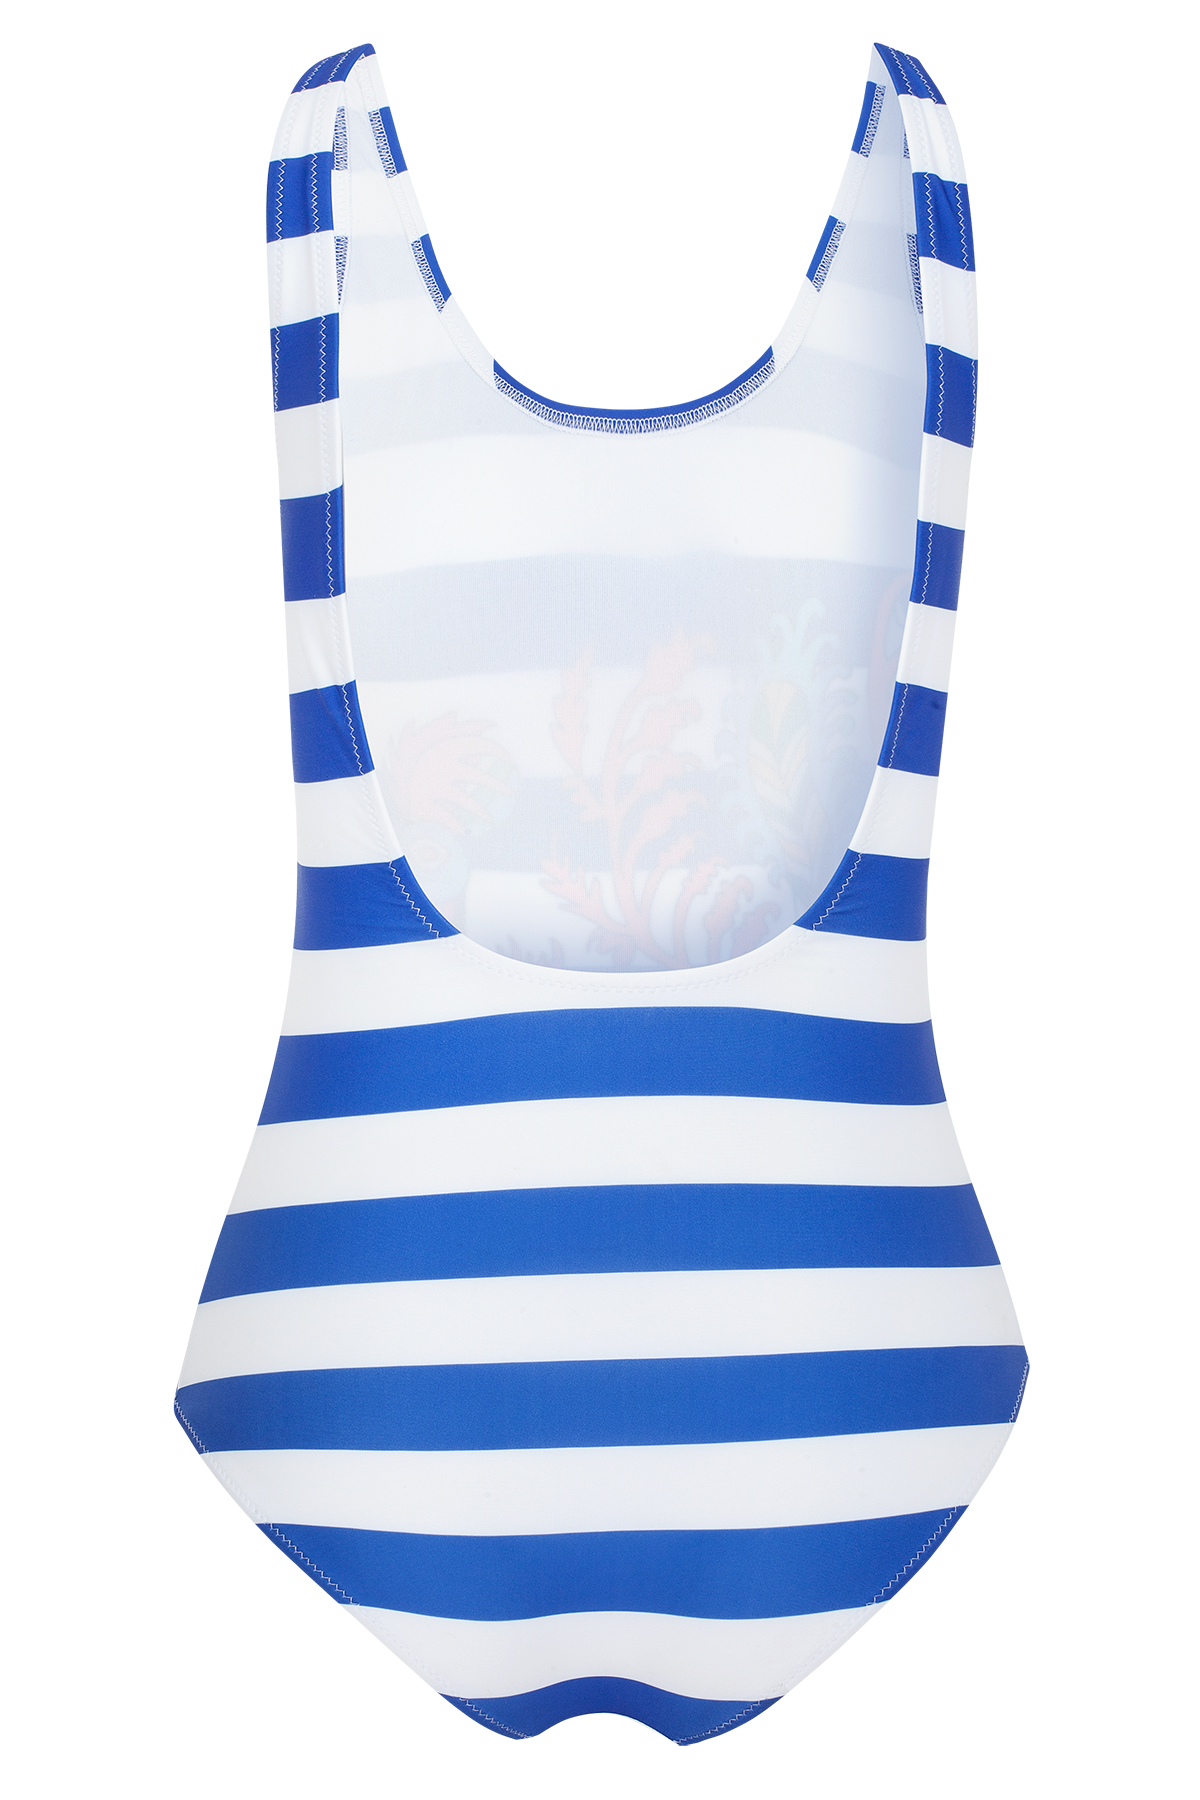 Greek Swim Suit